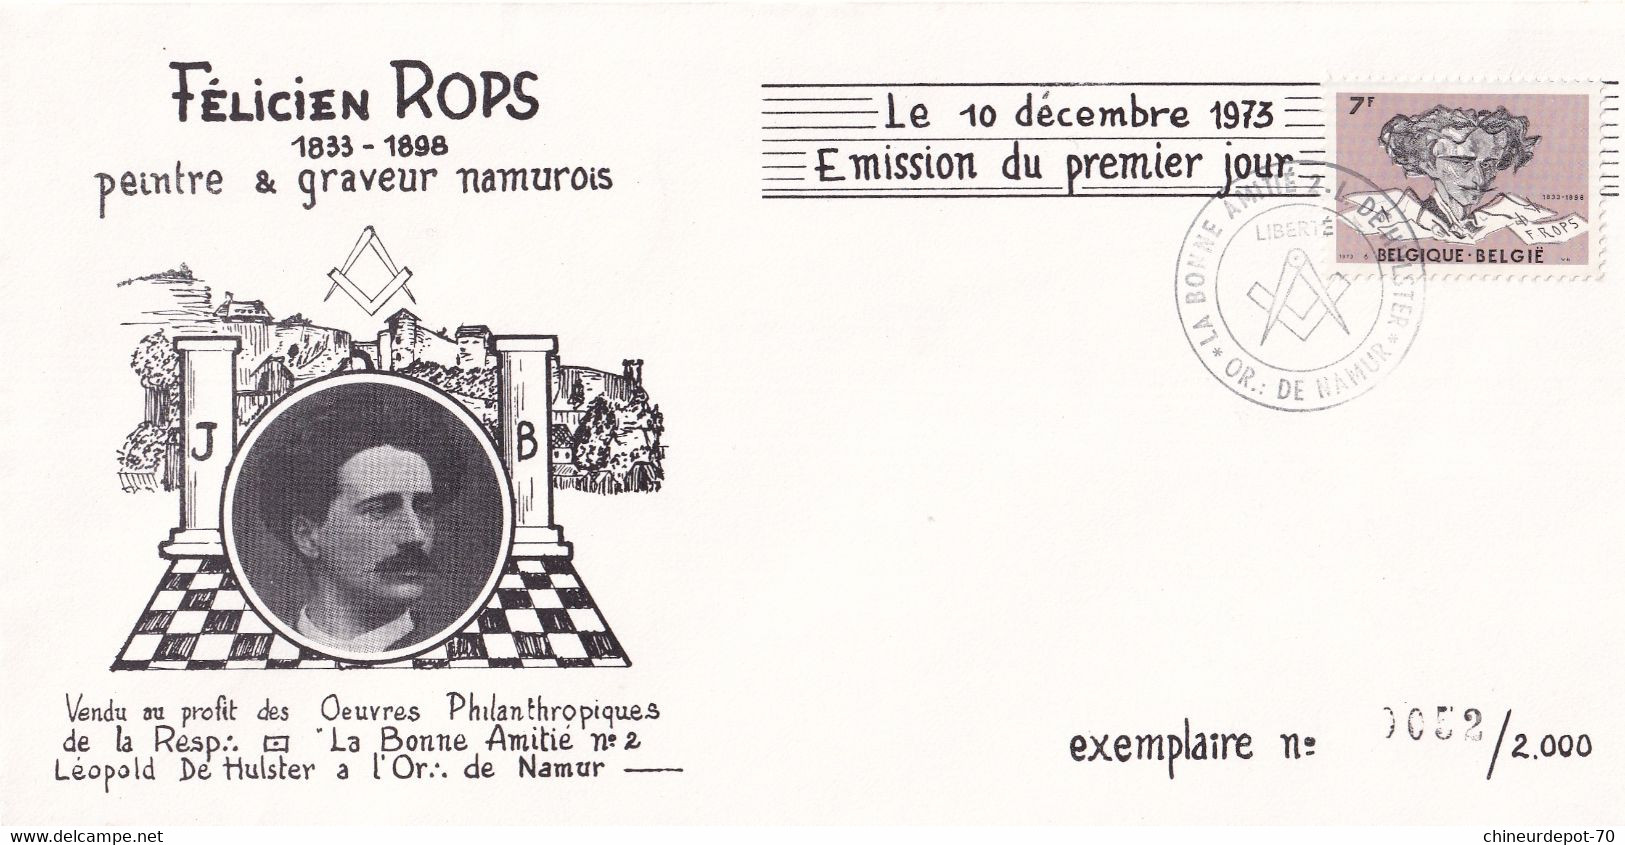 Félicien Rops Peintre & Graveur Namurois 1973 Namur Exemplaire Rare 0052 / 2000 - Covers